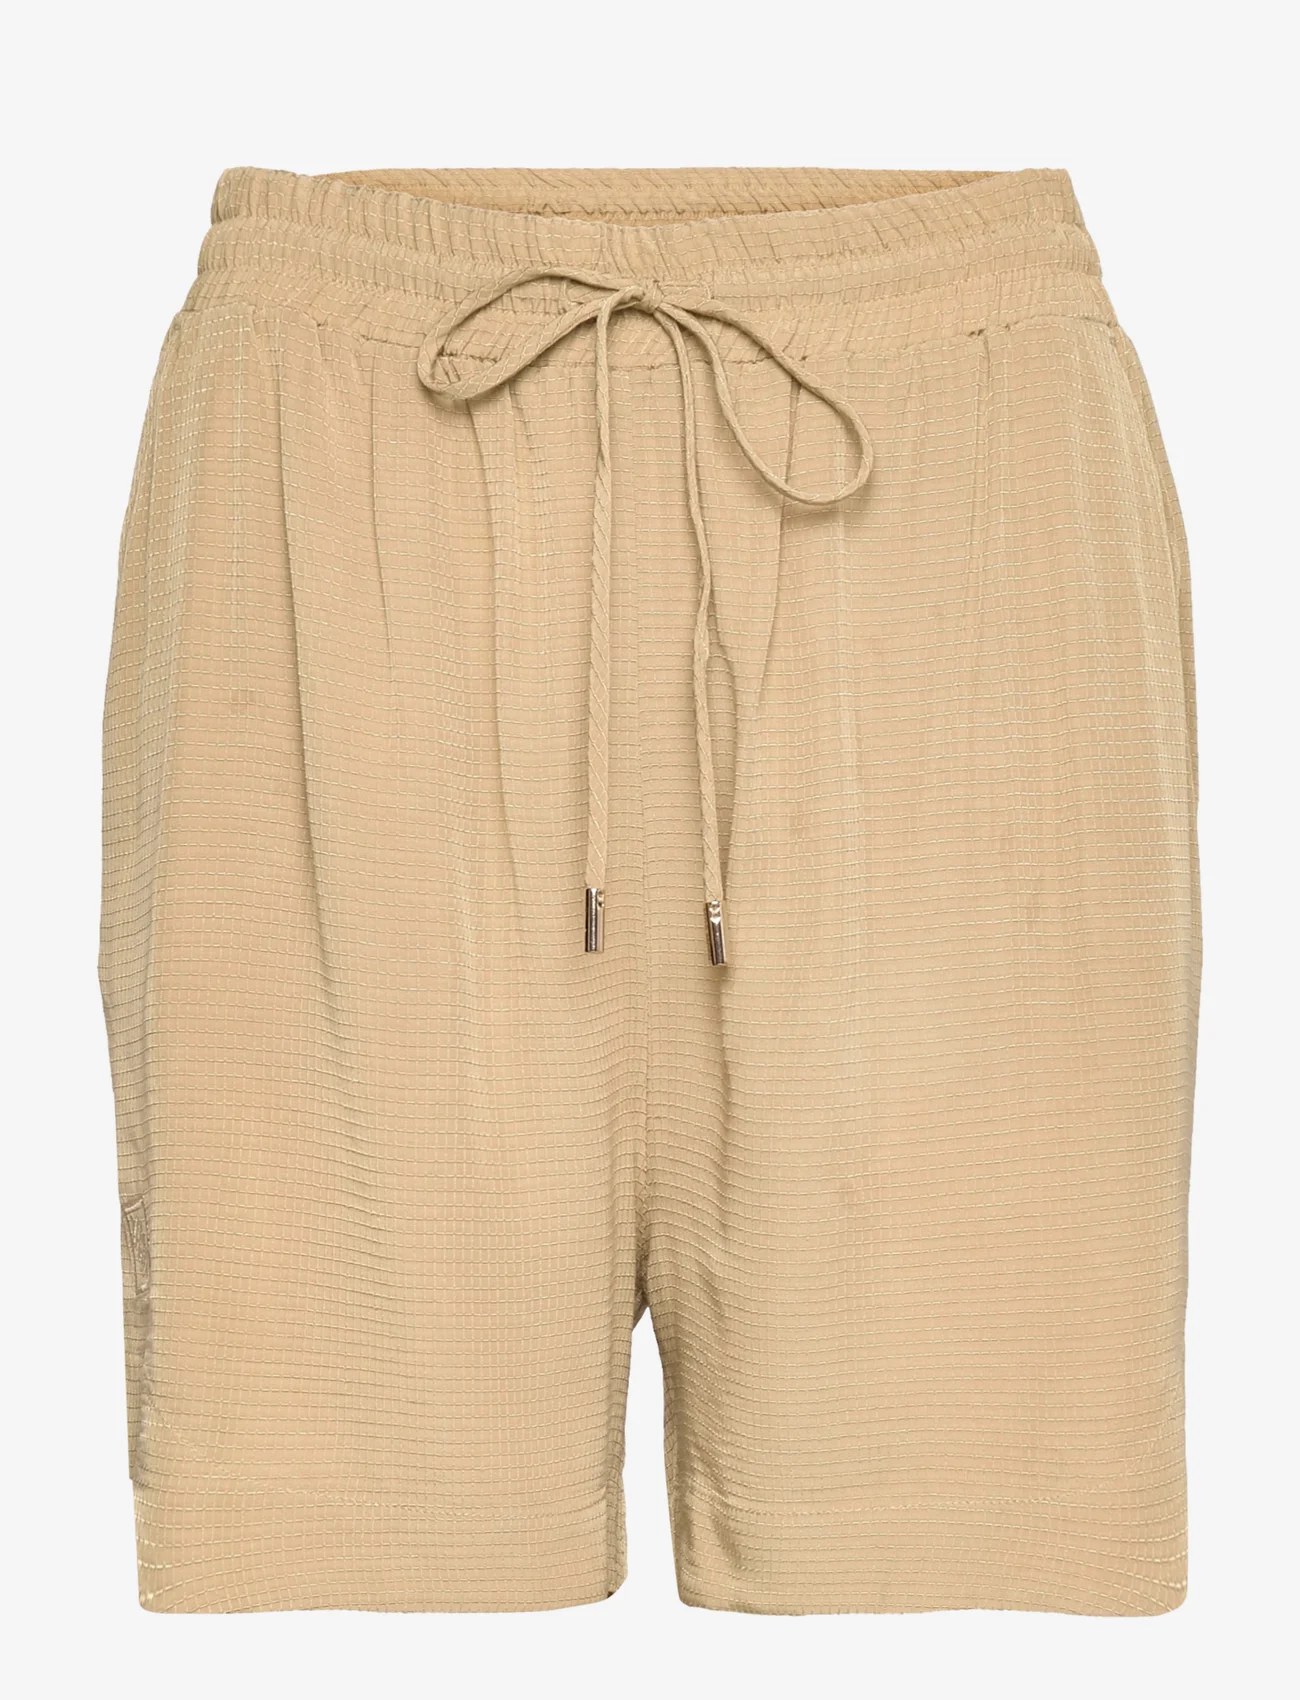 MOS MOSH - Aide Light Rip Shorts - lühikesed vabaajapüksid - olive gray - 0